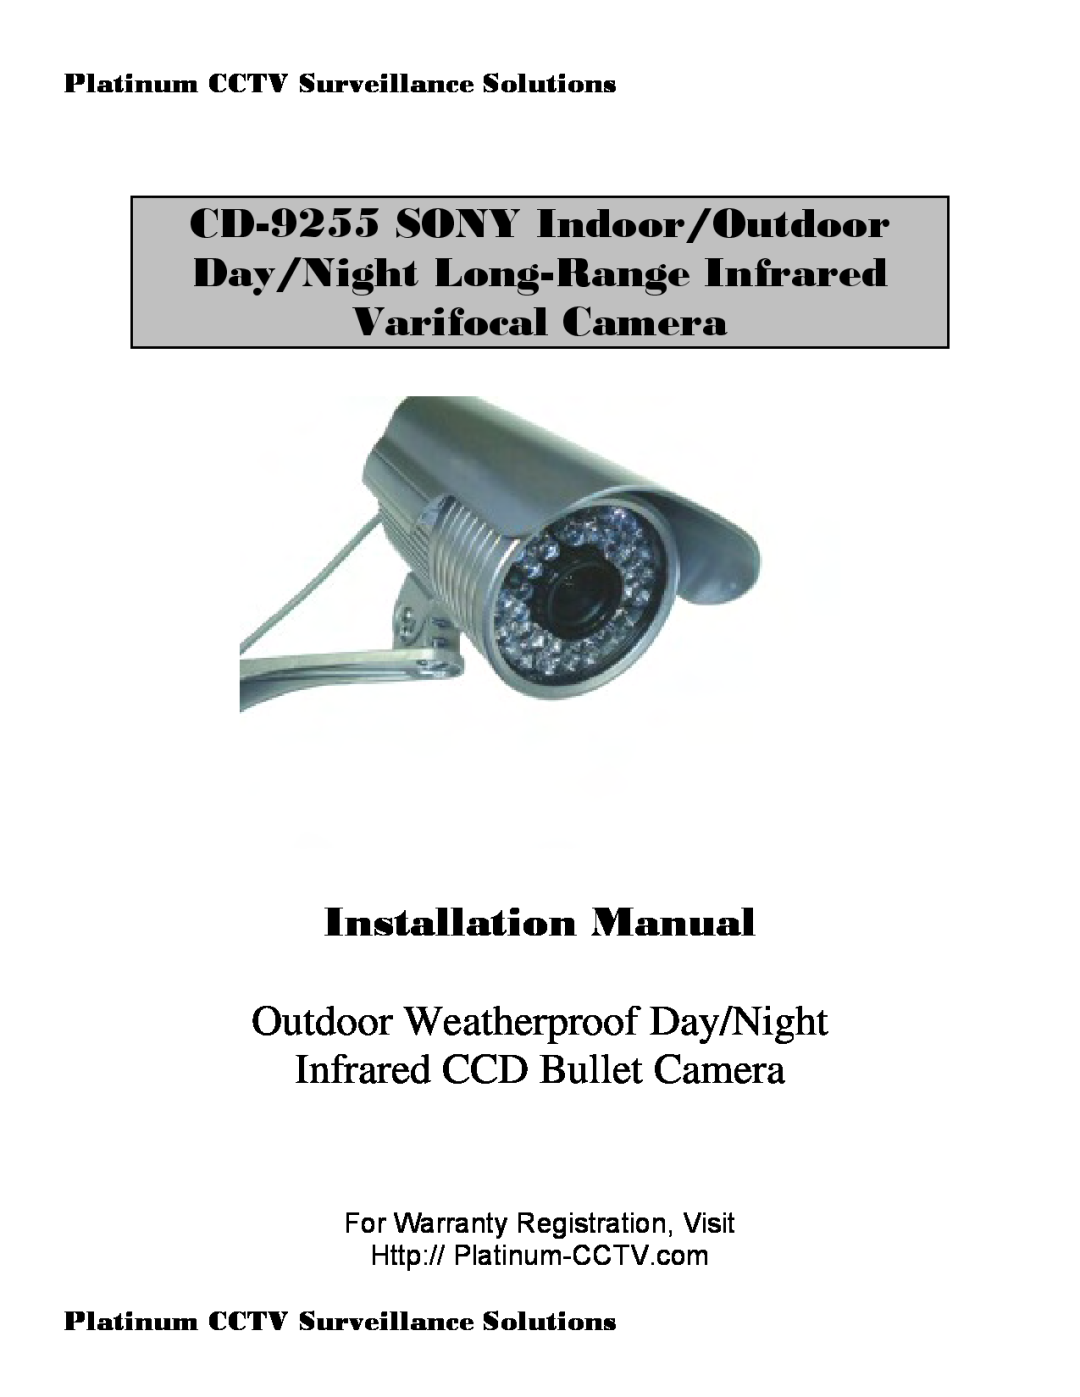 Sony CD-9255 installation manual Platinum CCTV Surveillance Solutions, Varifocal Camera Installation Manual 